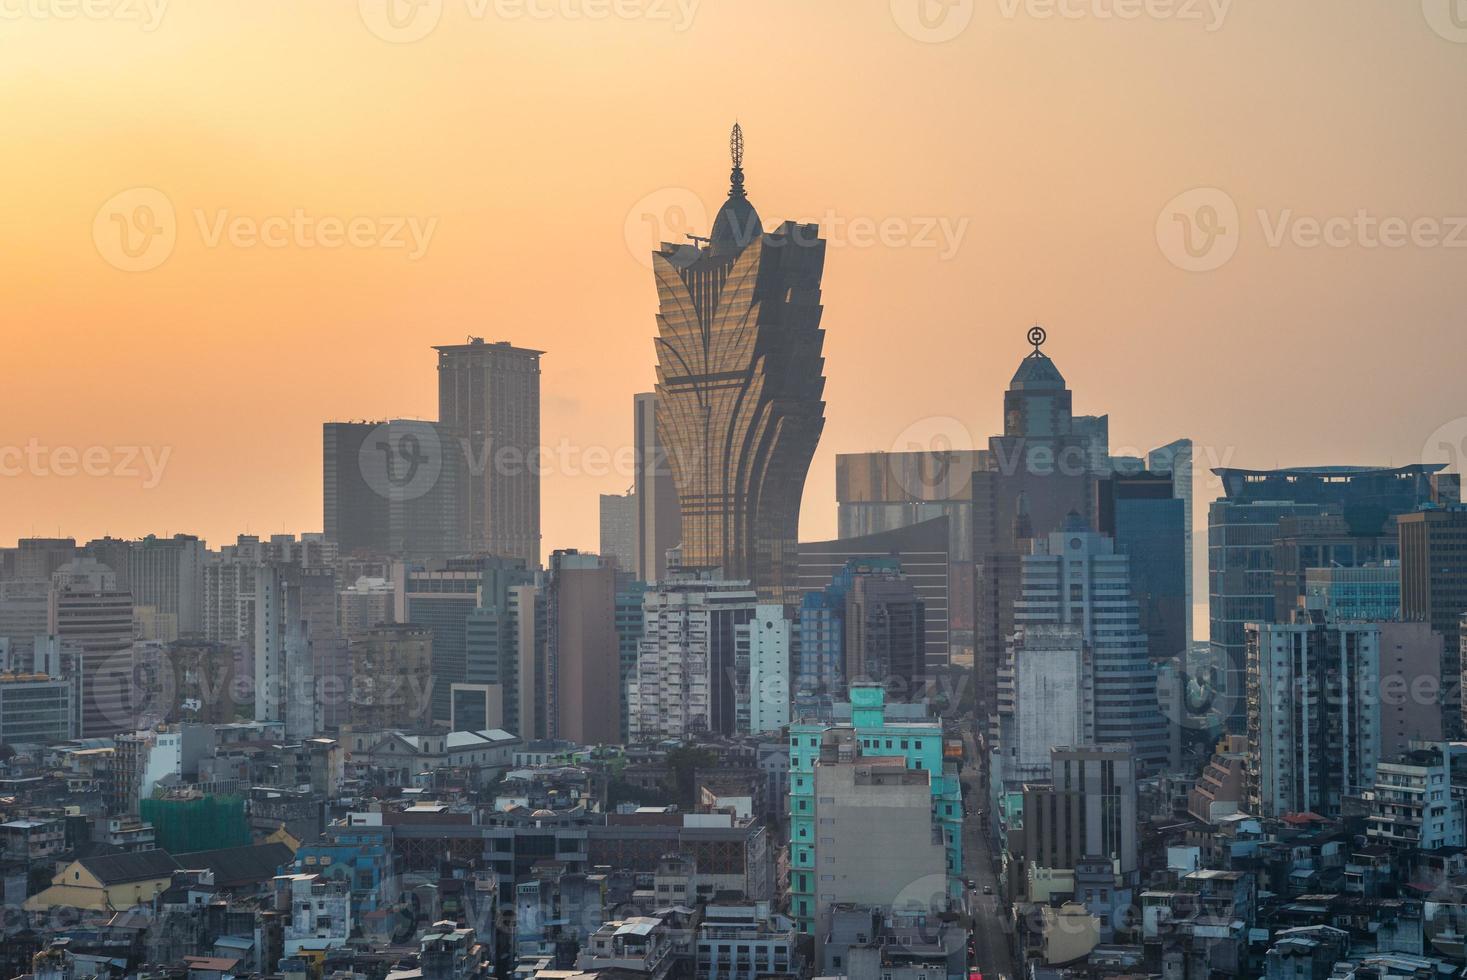 stadsbild av Macao i Kina vid solnedgången foto